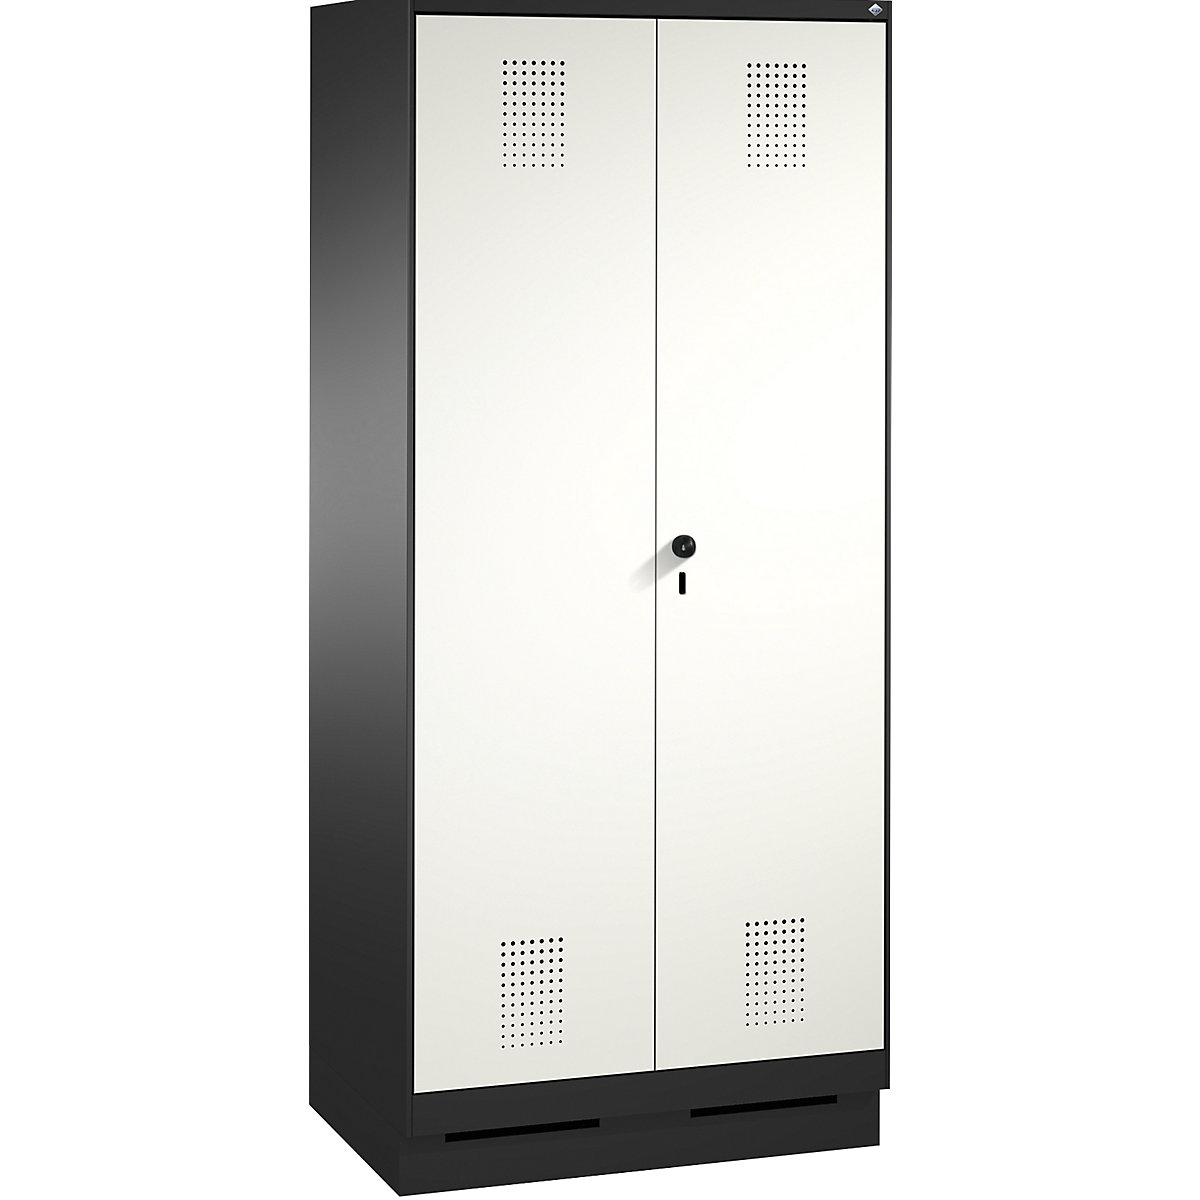 Garderobna omara EVOLO, dvokrilna vrata – C+P, 2 razdelka, širina razdelka 400 mm, s podnožjem, črno sive / prometno bele barve-7